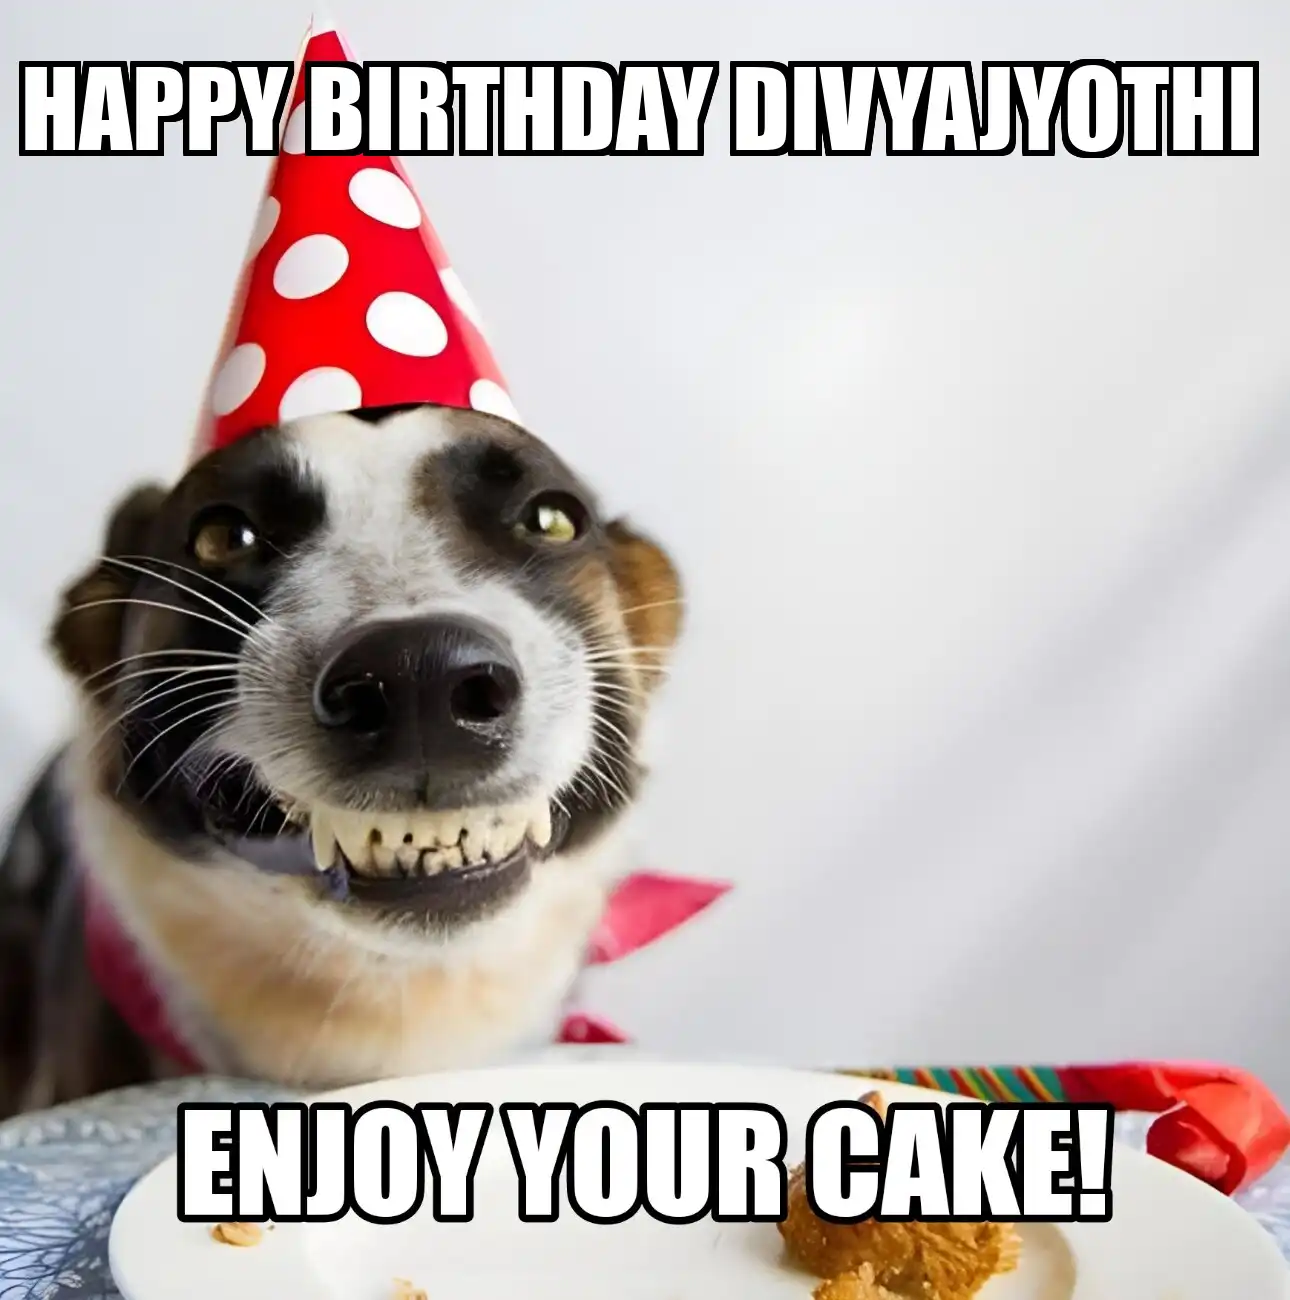 Happy Birthday Divyajyothi Enjoy Your Cake Dog Meme